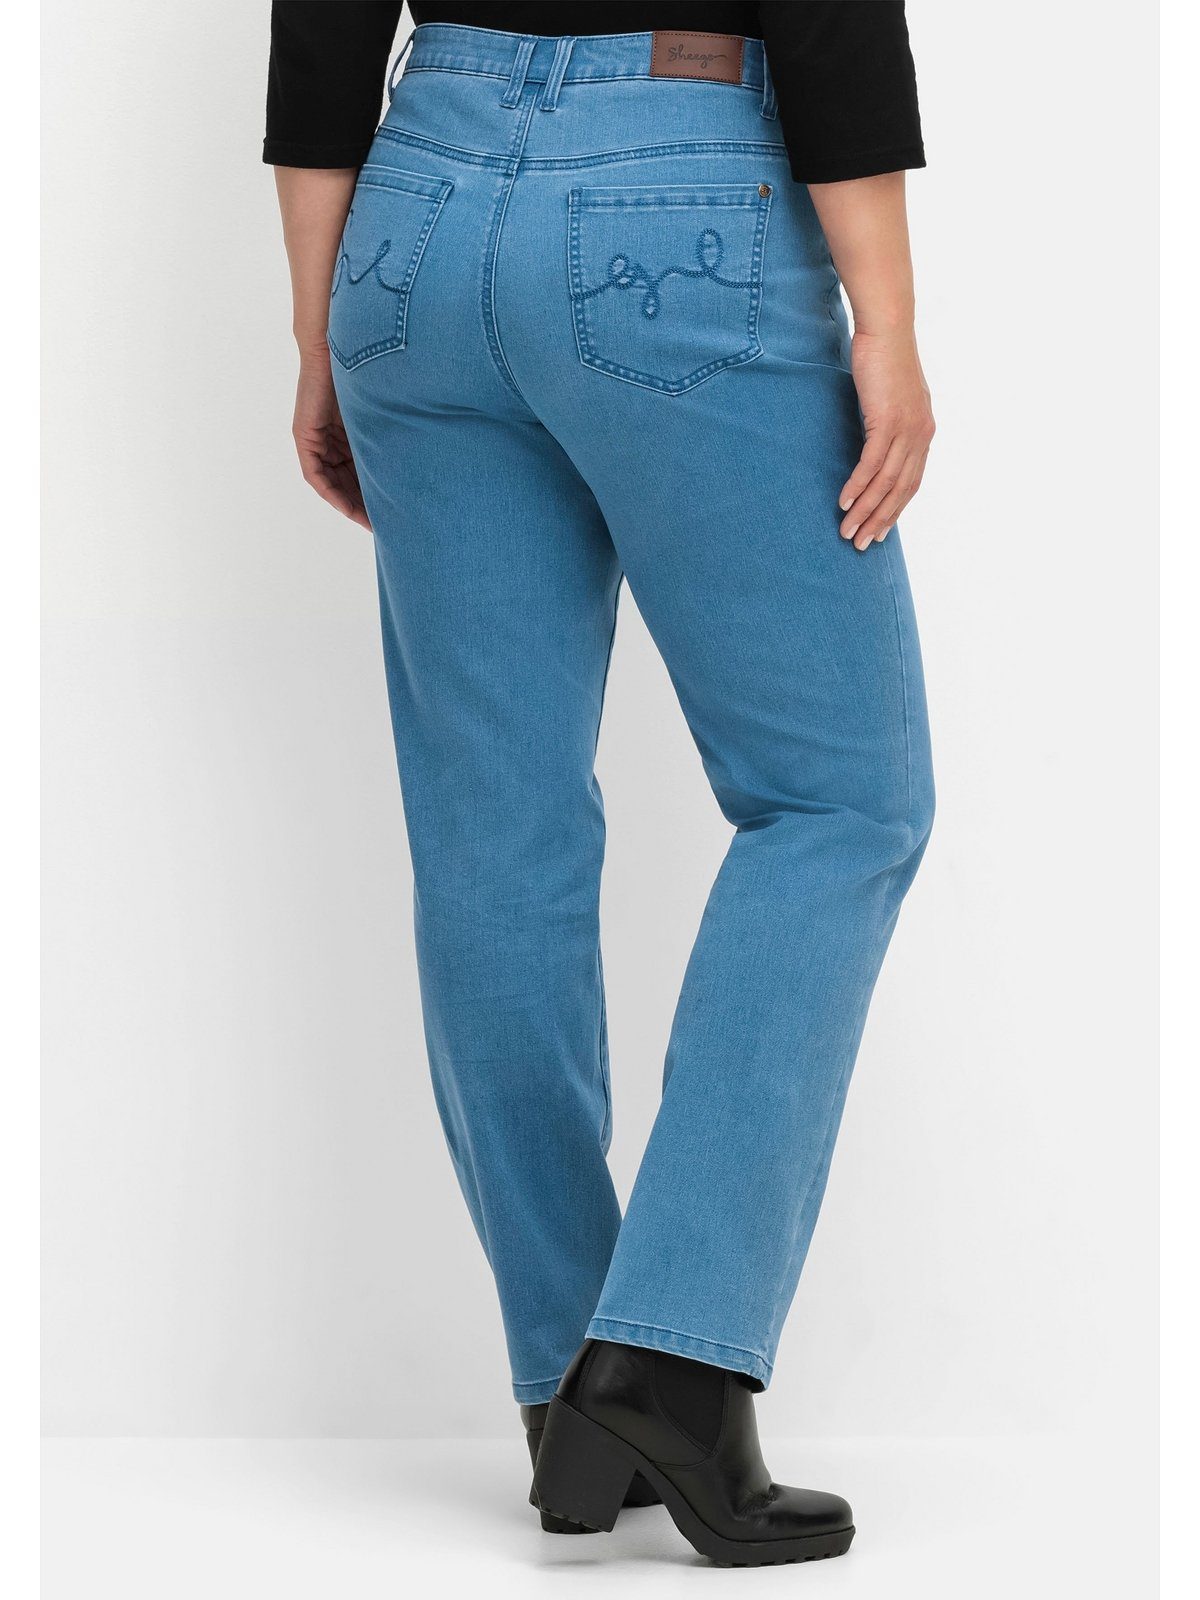 Große im Denim 5-Pocket-Stil Sheego Stretch-Jeans Größen blue